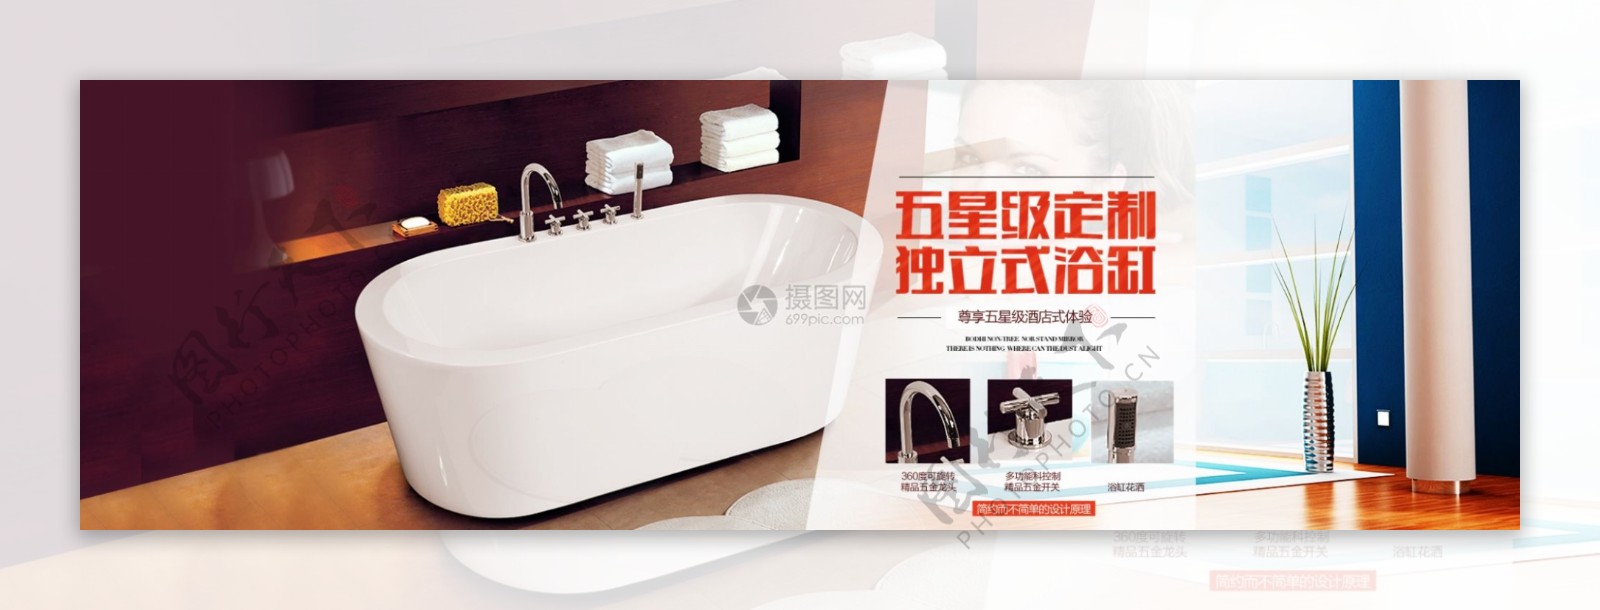 五星级独立式浴缸促销淘宝banner